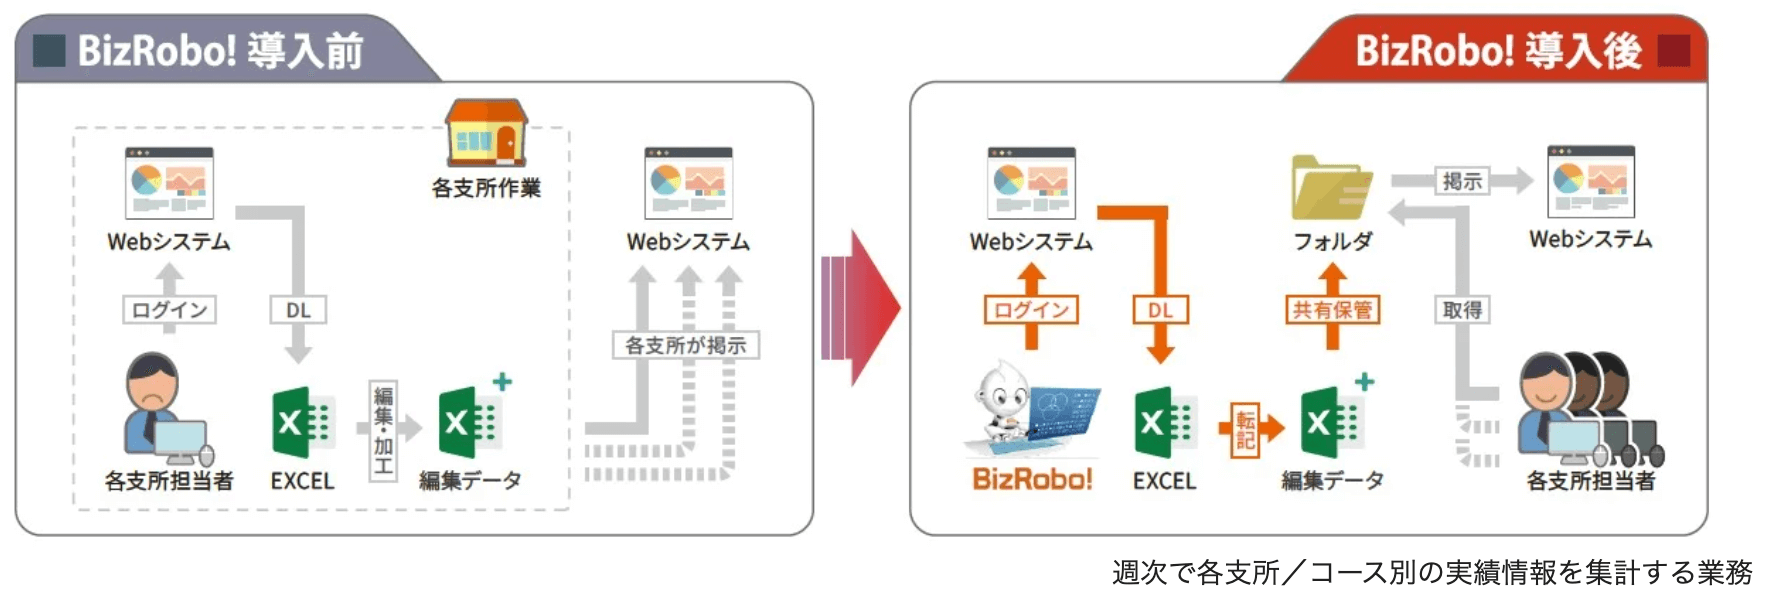 香川県で店舗や宅配事業を展開する生活協同組合コープかがわは、2019年パソコン上の定型作業を自動実行するRPAツールを導入し、2023年に「BizRobo! mini」を導入（移行）した。